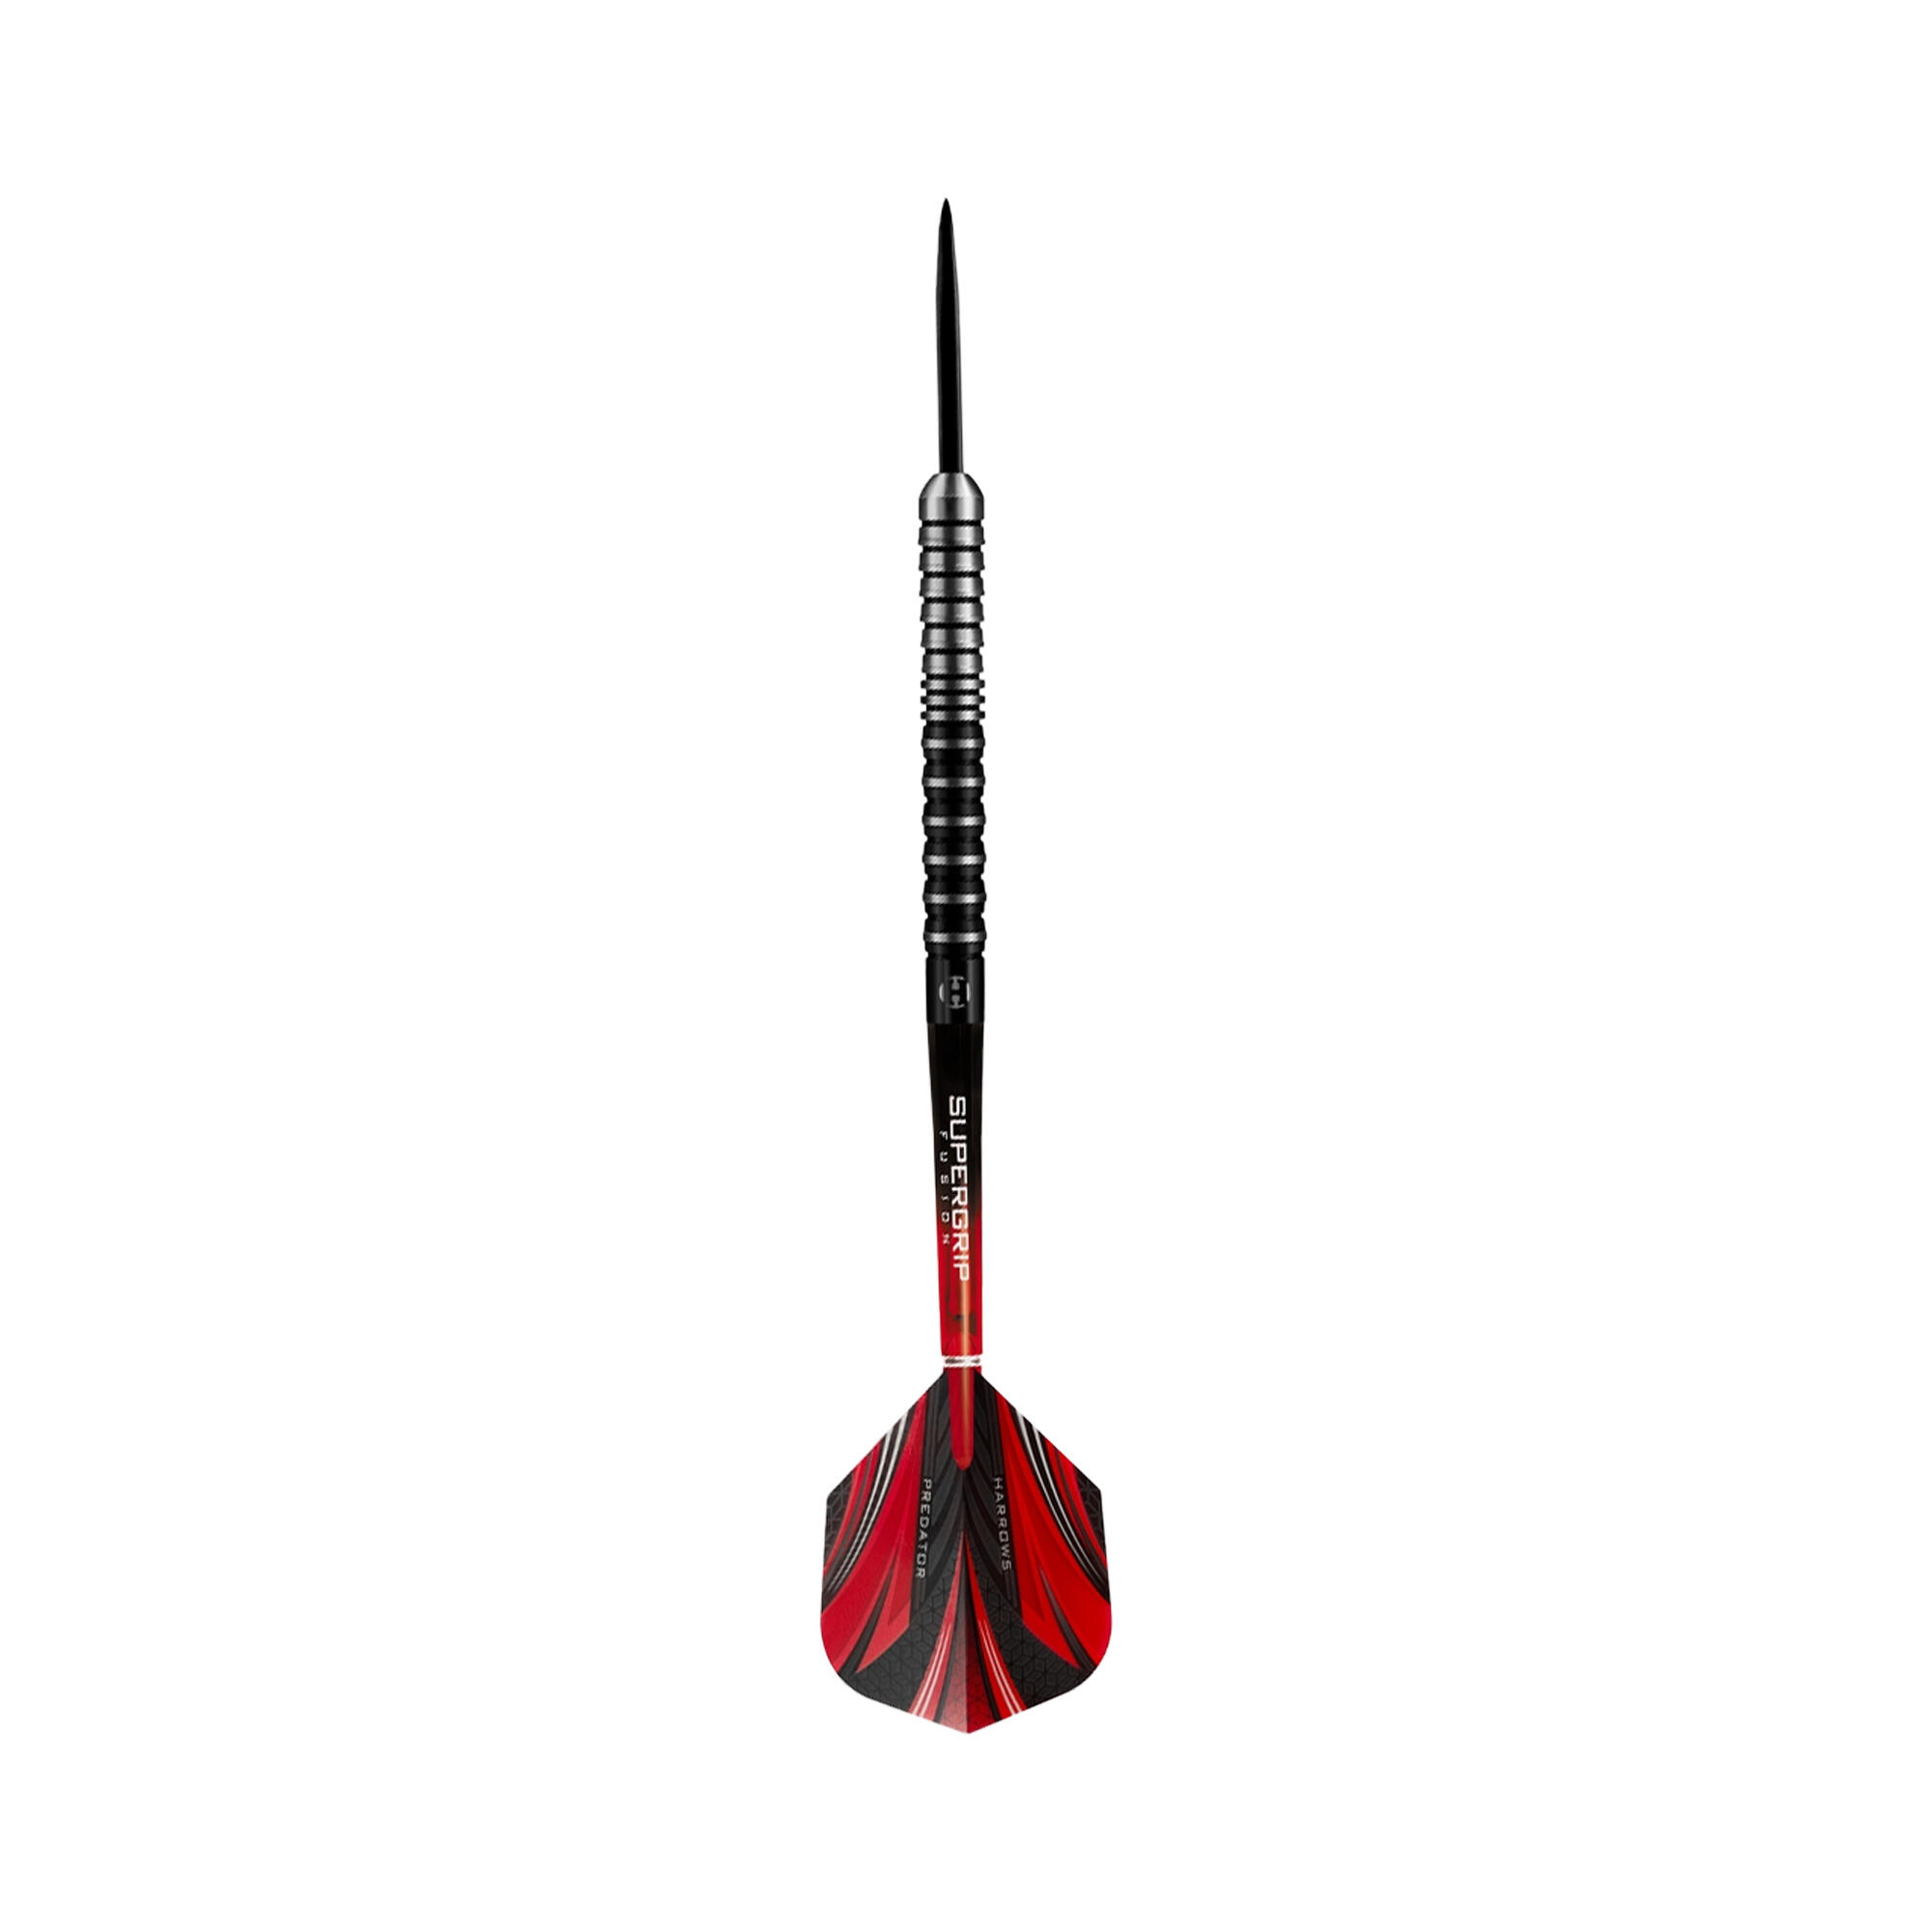 Predator Tungsten Darts (Pack of 5) (Black/Red) 3/4